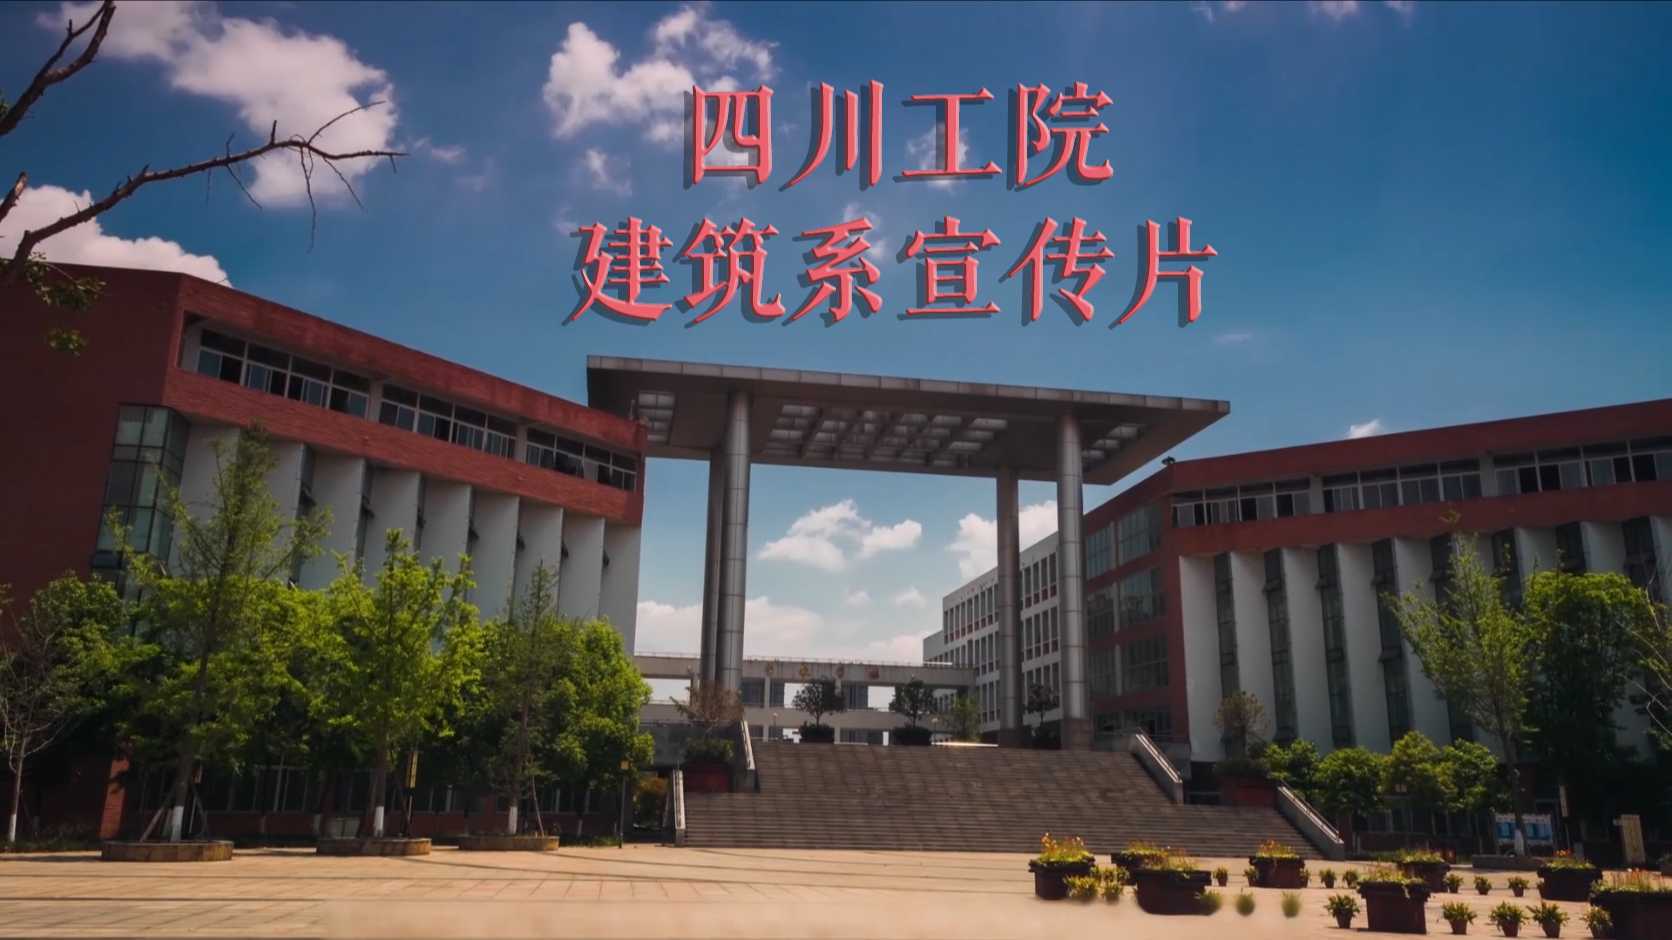 【宣传片】四川工程职业技术学院建筑工程系宣传片